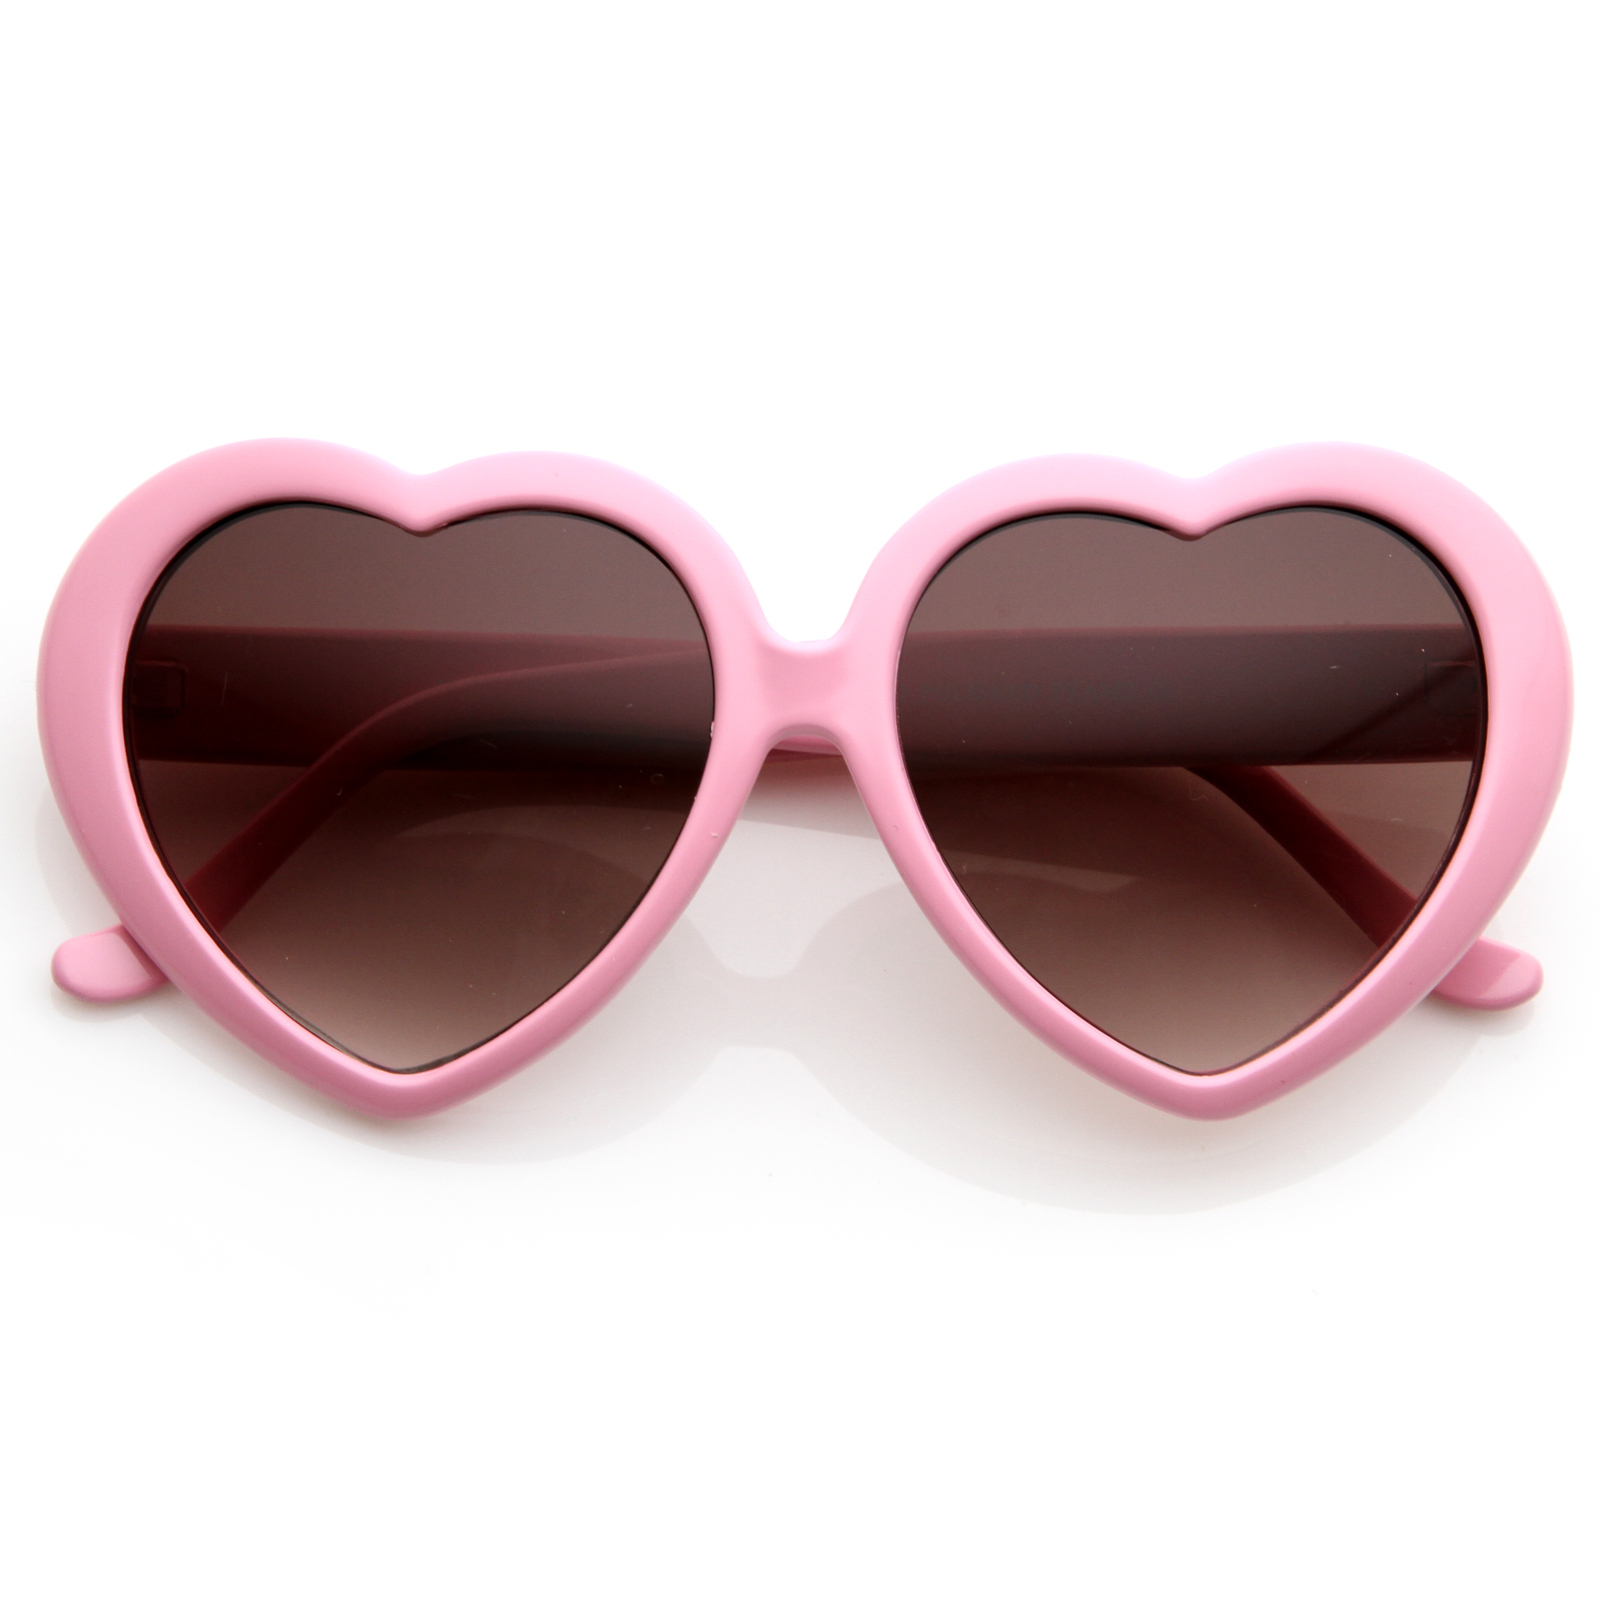 Large Oversized Womens Heart Shaped Sunglasses Cute Love Fashion Eyewear - 8182 - White Smoke